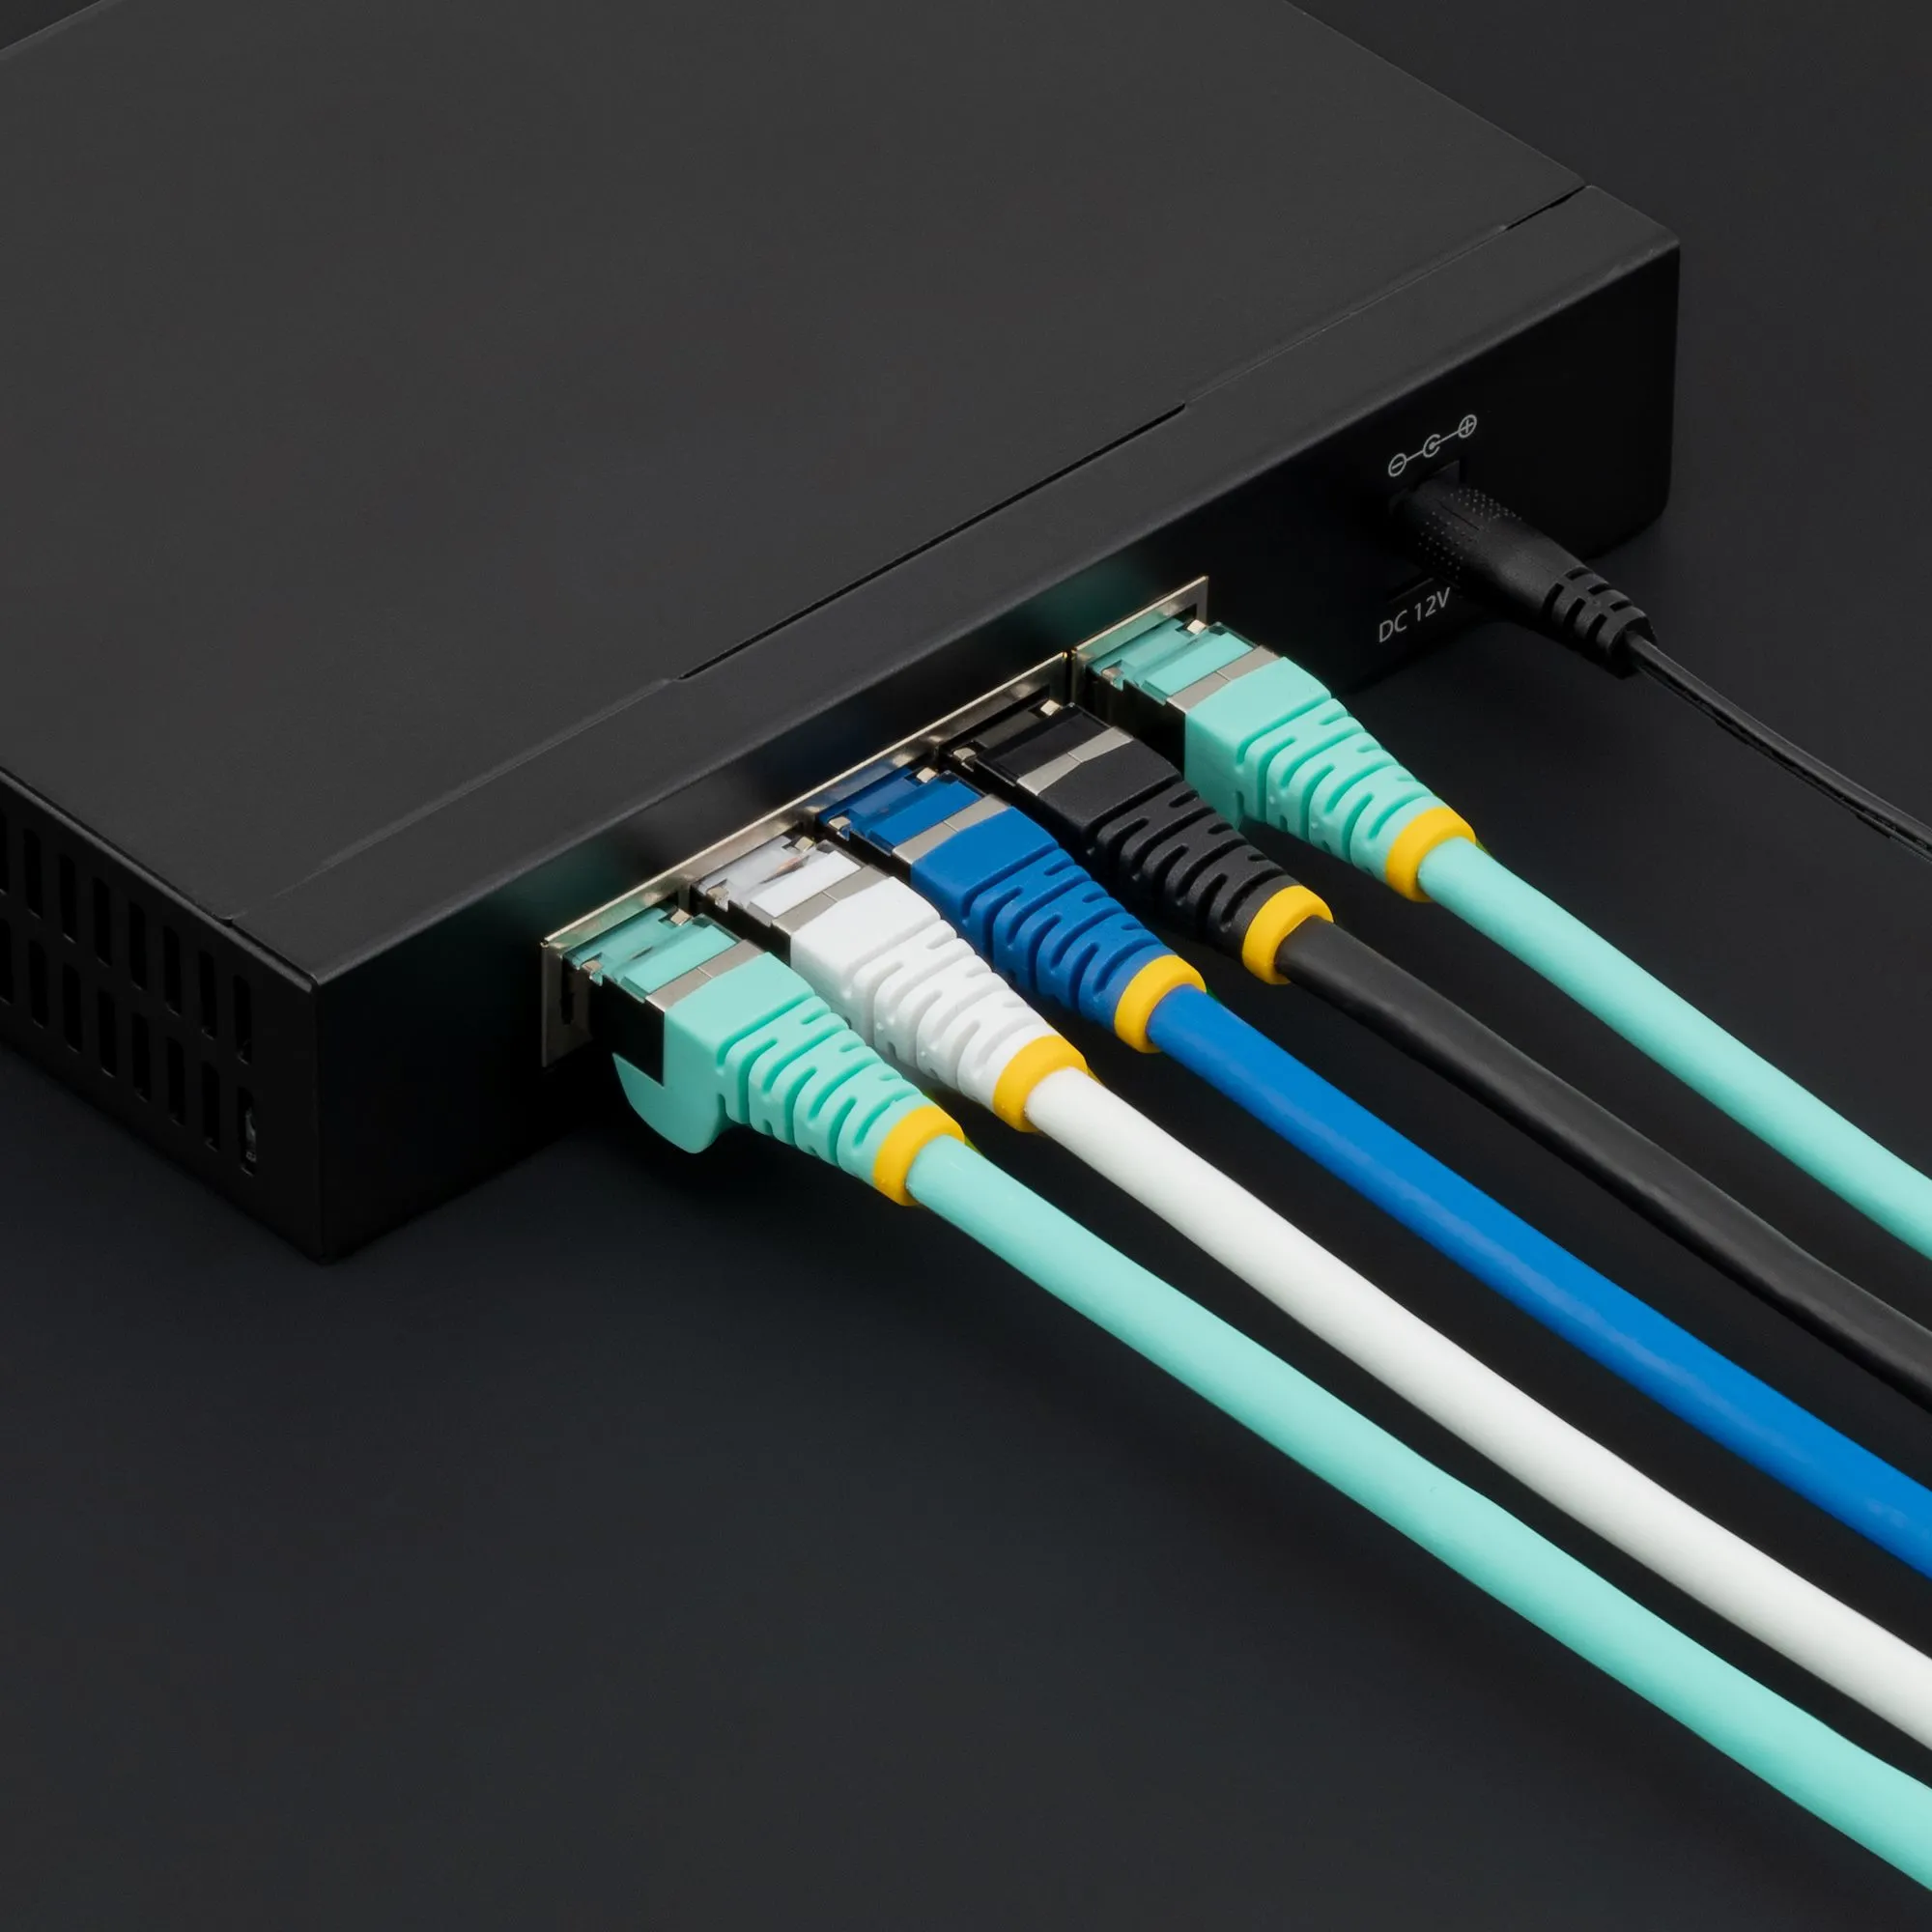 Achat StarTech.com Câble Ethernet CAT6a 7m - Low Smoke sur hello RSE - visuel 9